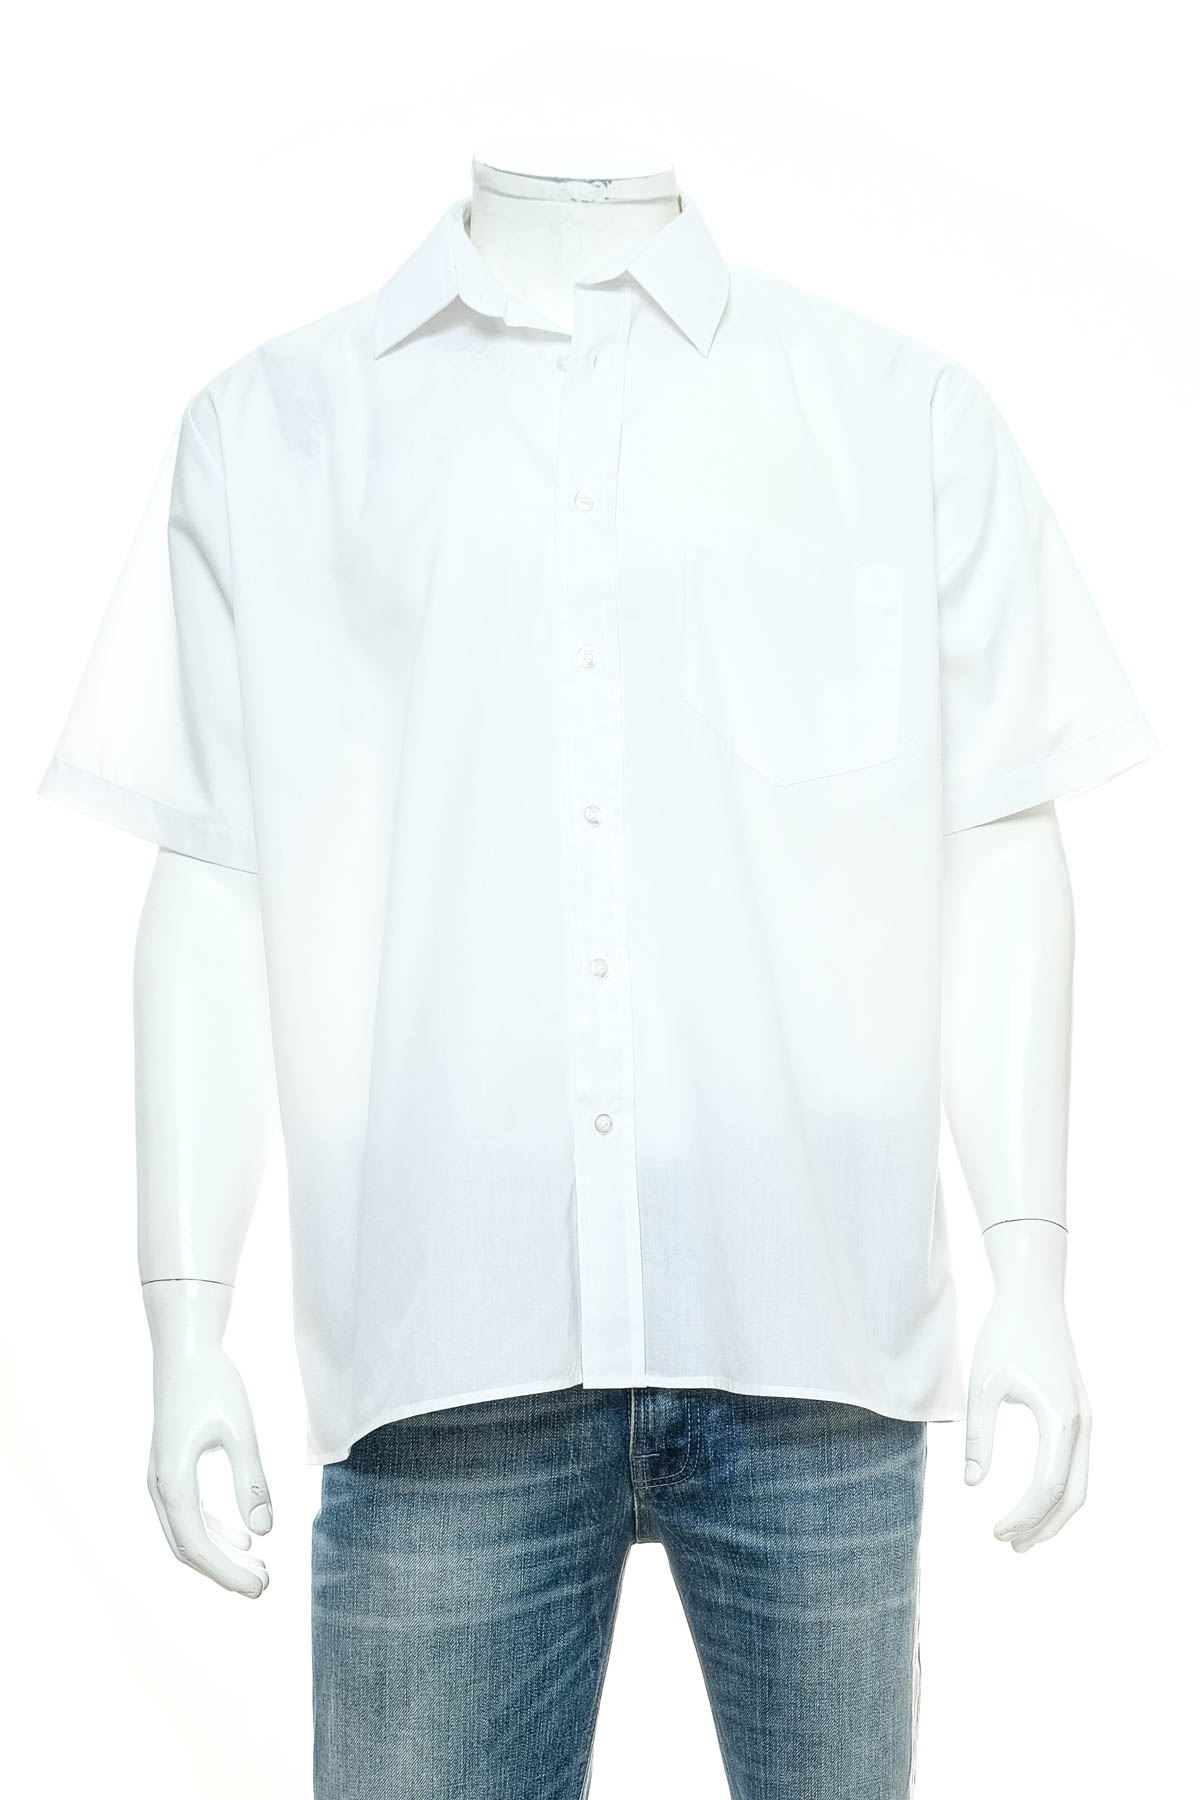 Ανδρικό πουκάμισο - PREMIER - 0